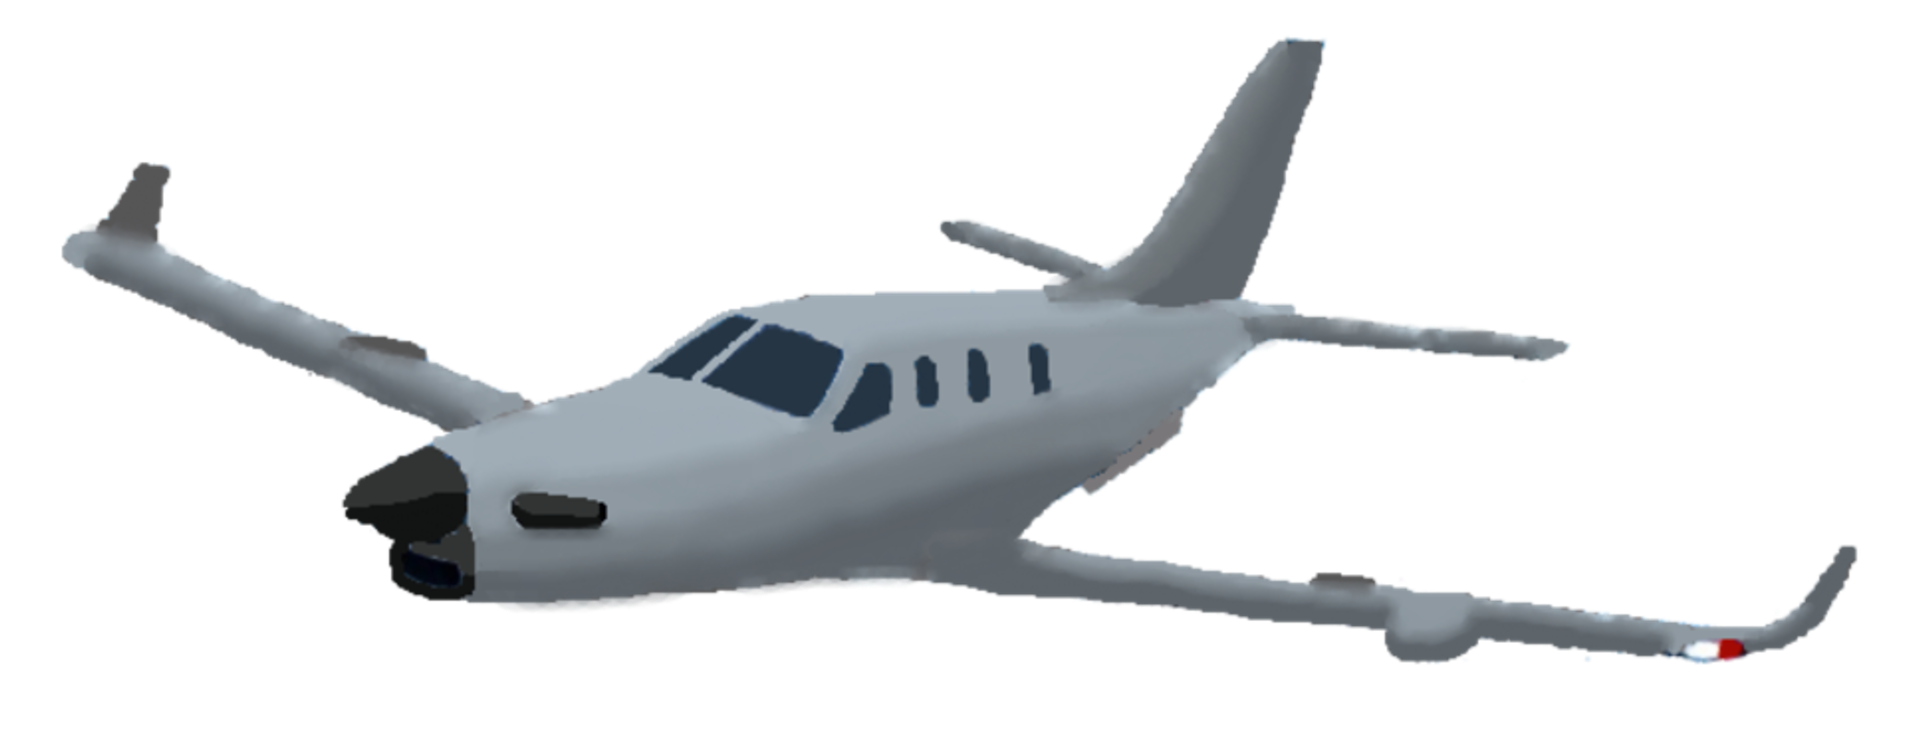 Flight simulator - Wikipedia